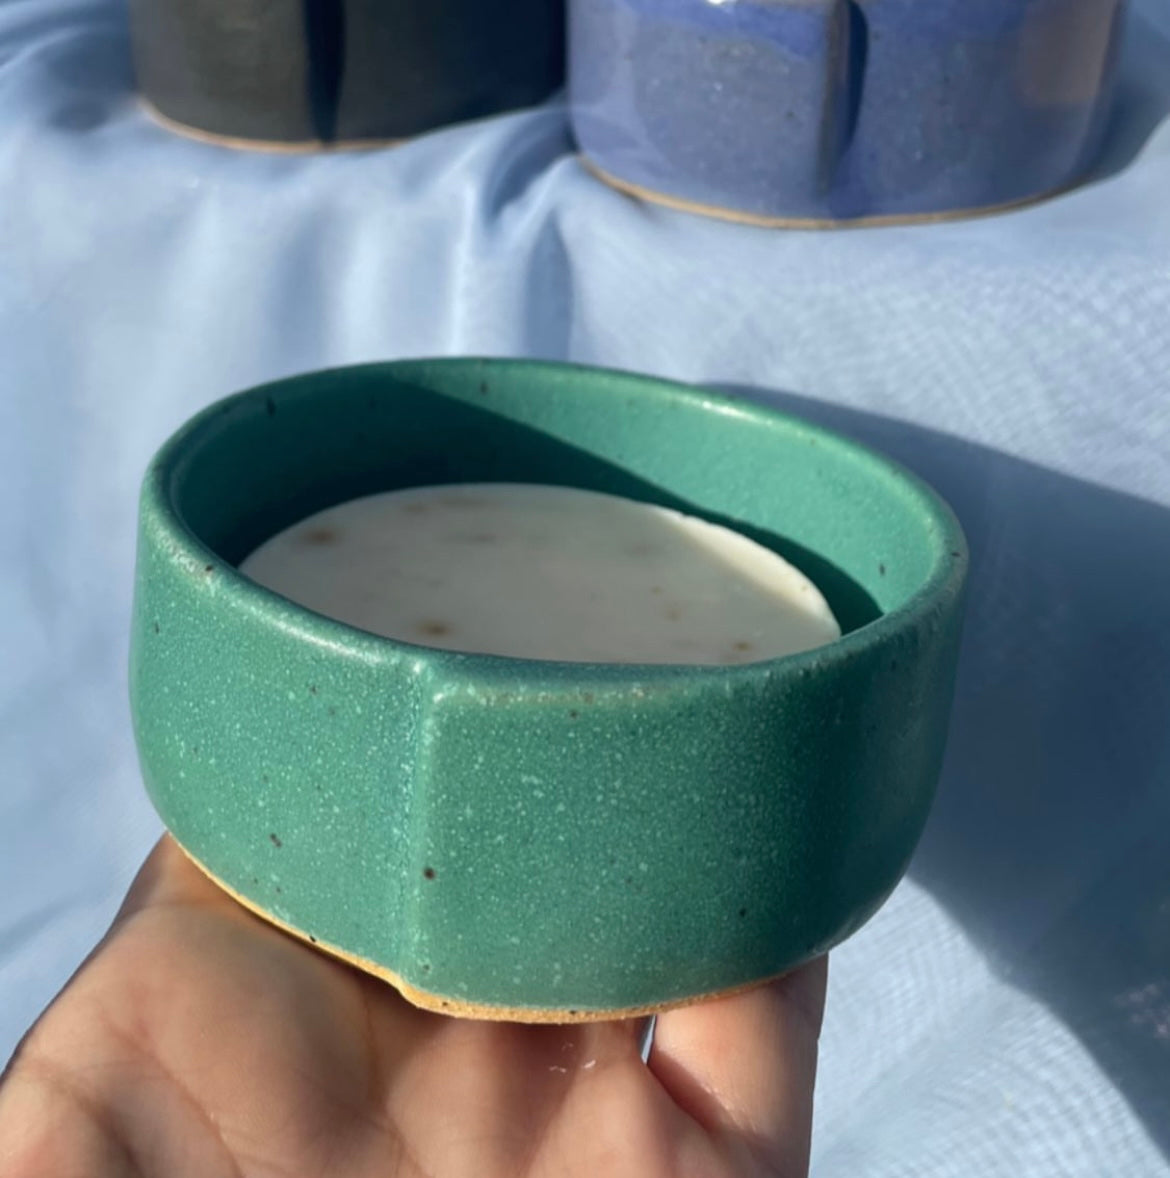 solid dish soap bar in green ceramic ramekin